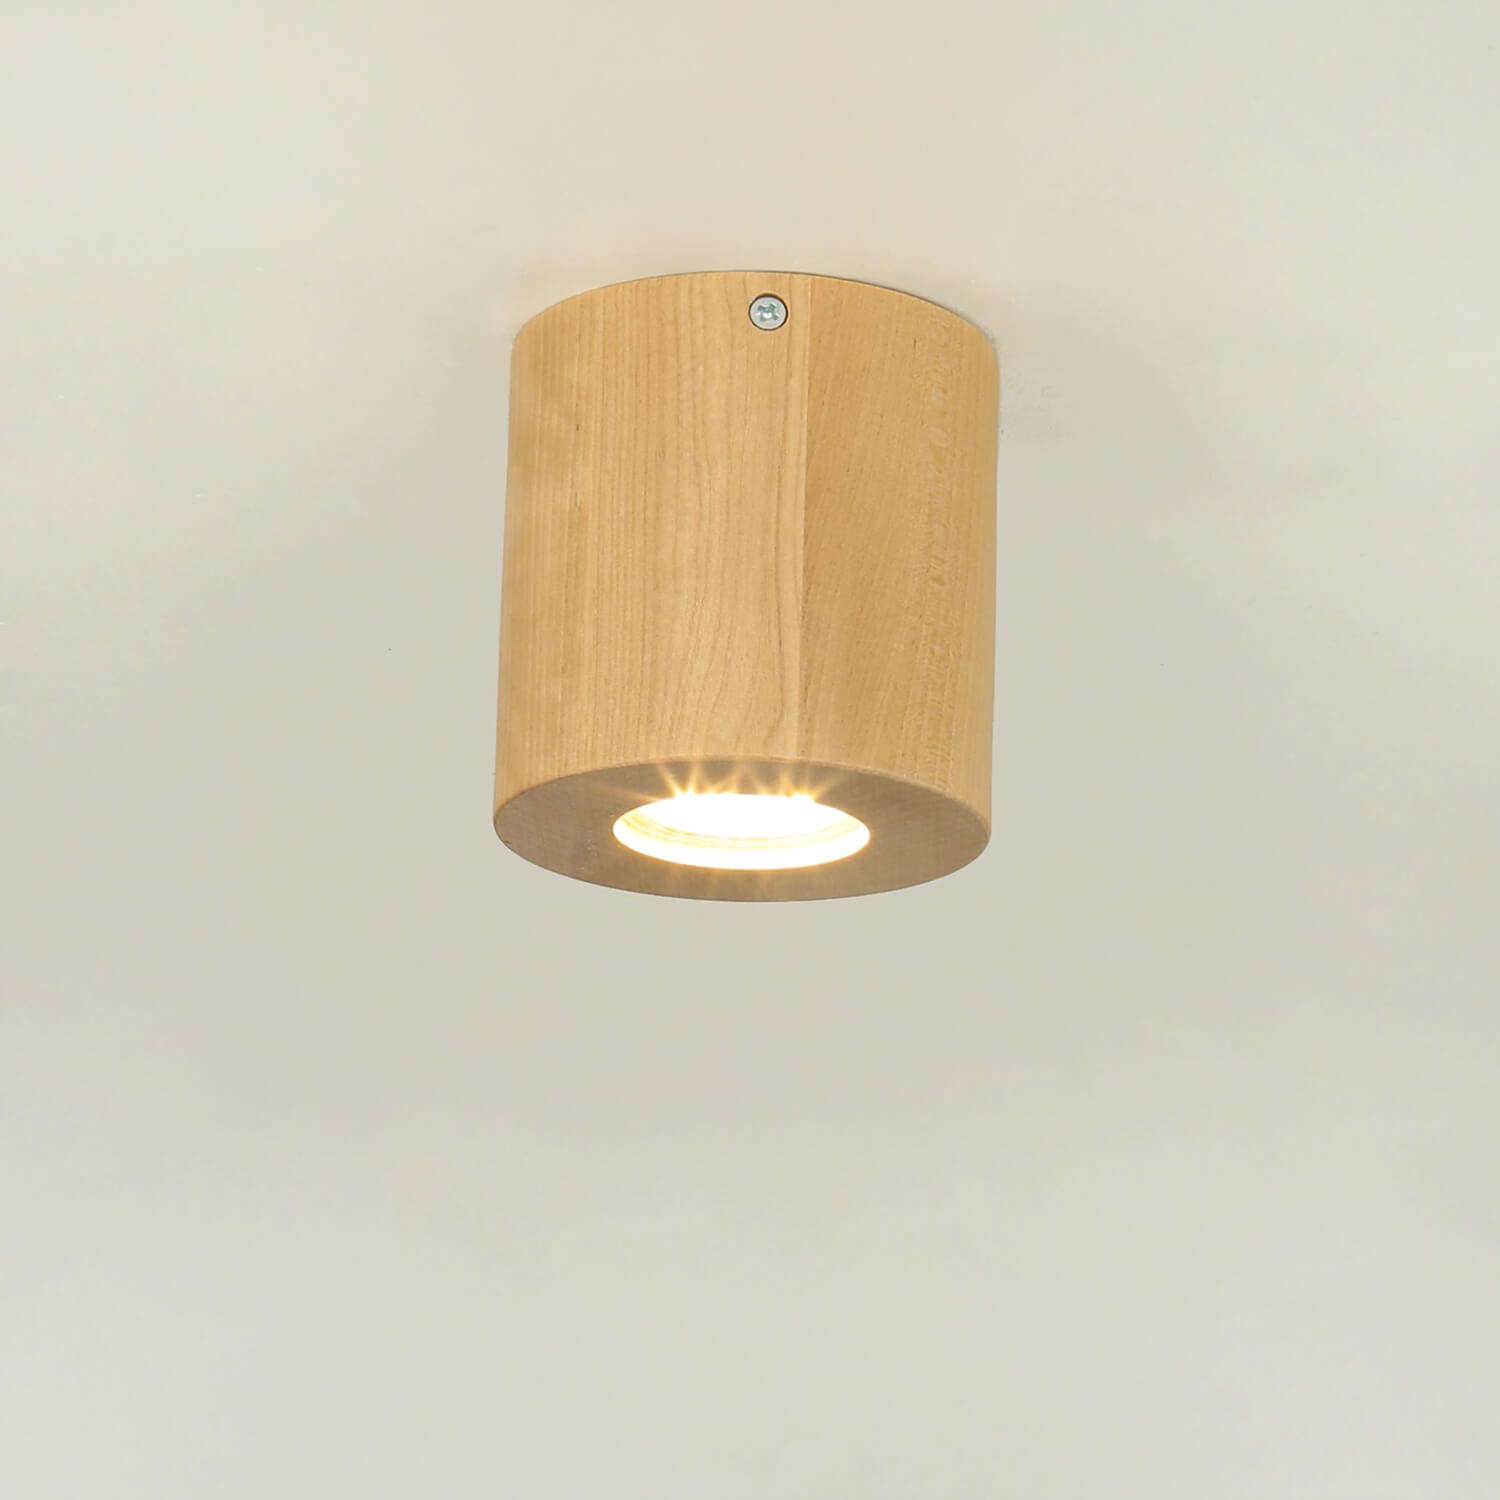 Deckenlampe Holz Ø10cm klein rund GU10 Modern